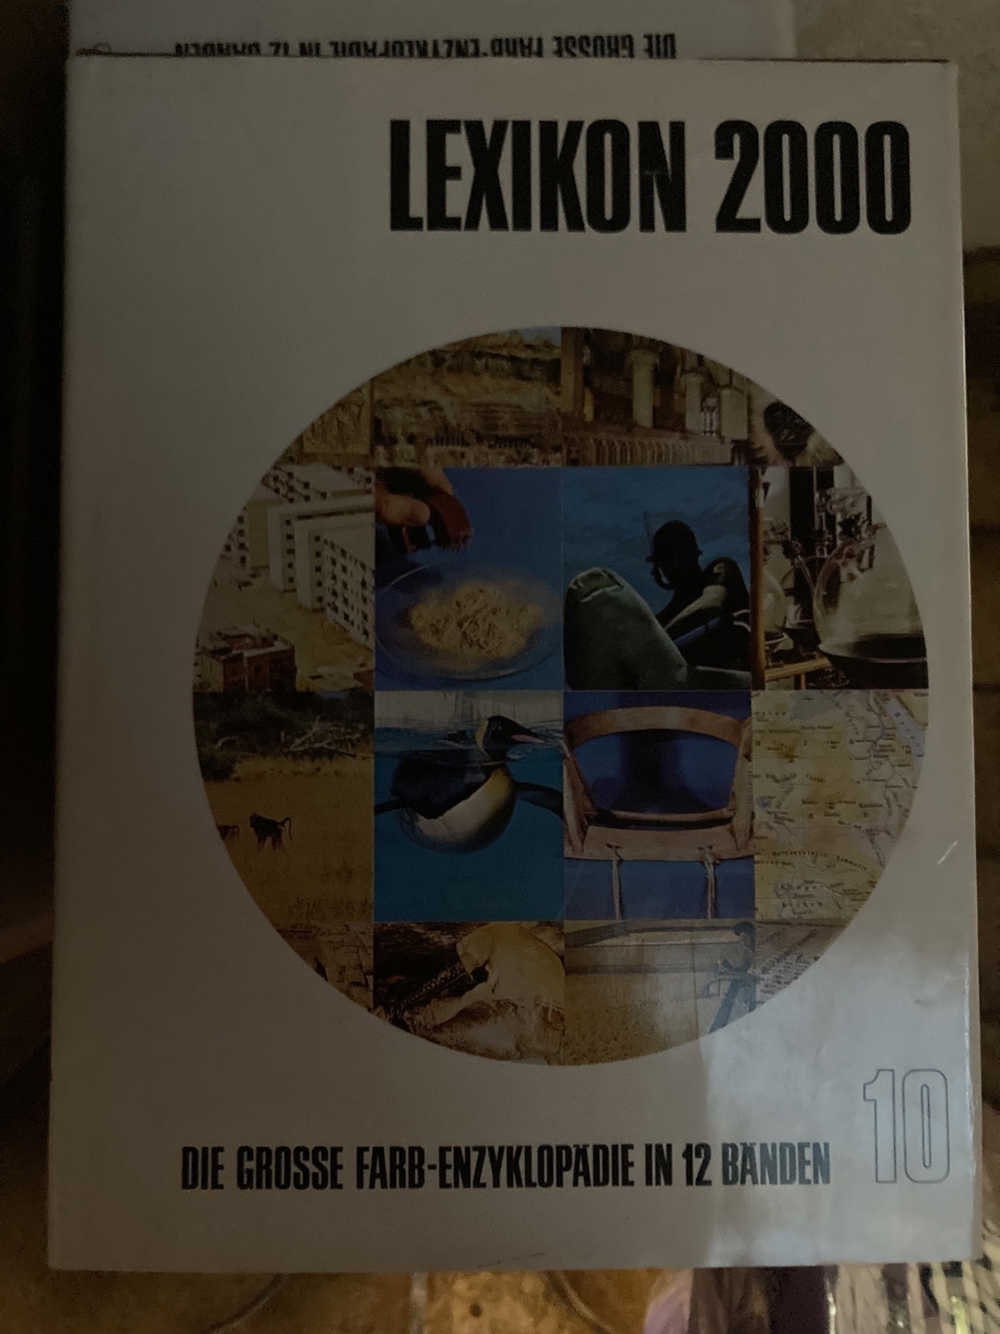 GRATIS: Lexikon 2000 Die große Farb-Enzyklopädie in 12 Bänden (komplett)